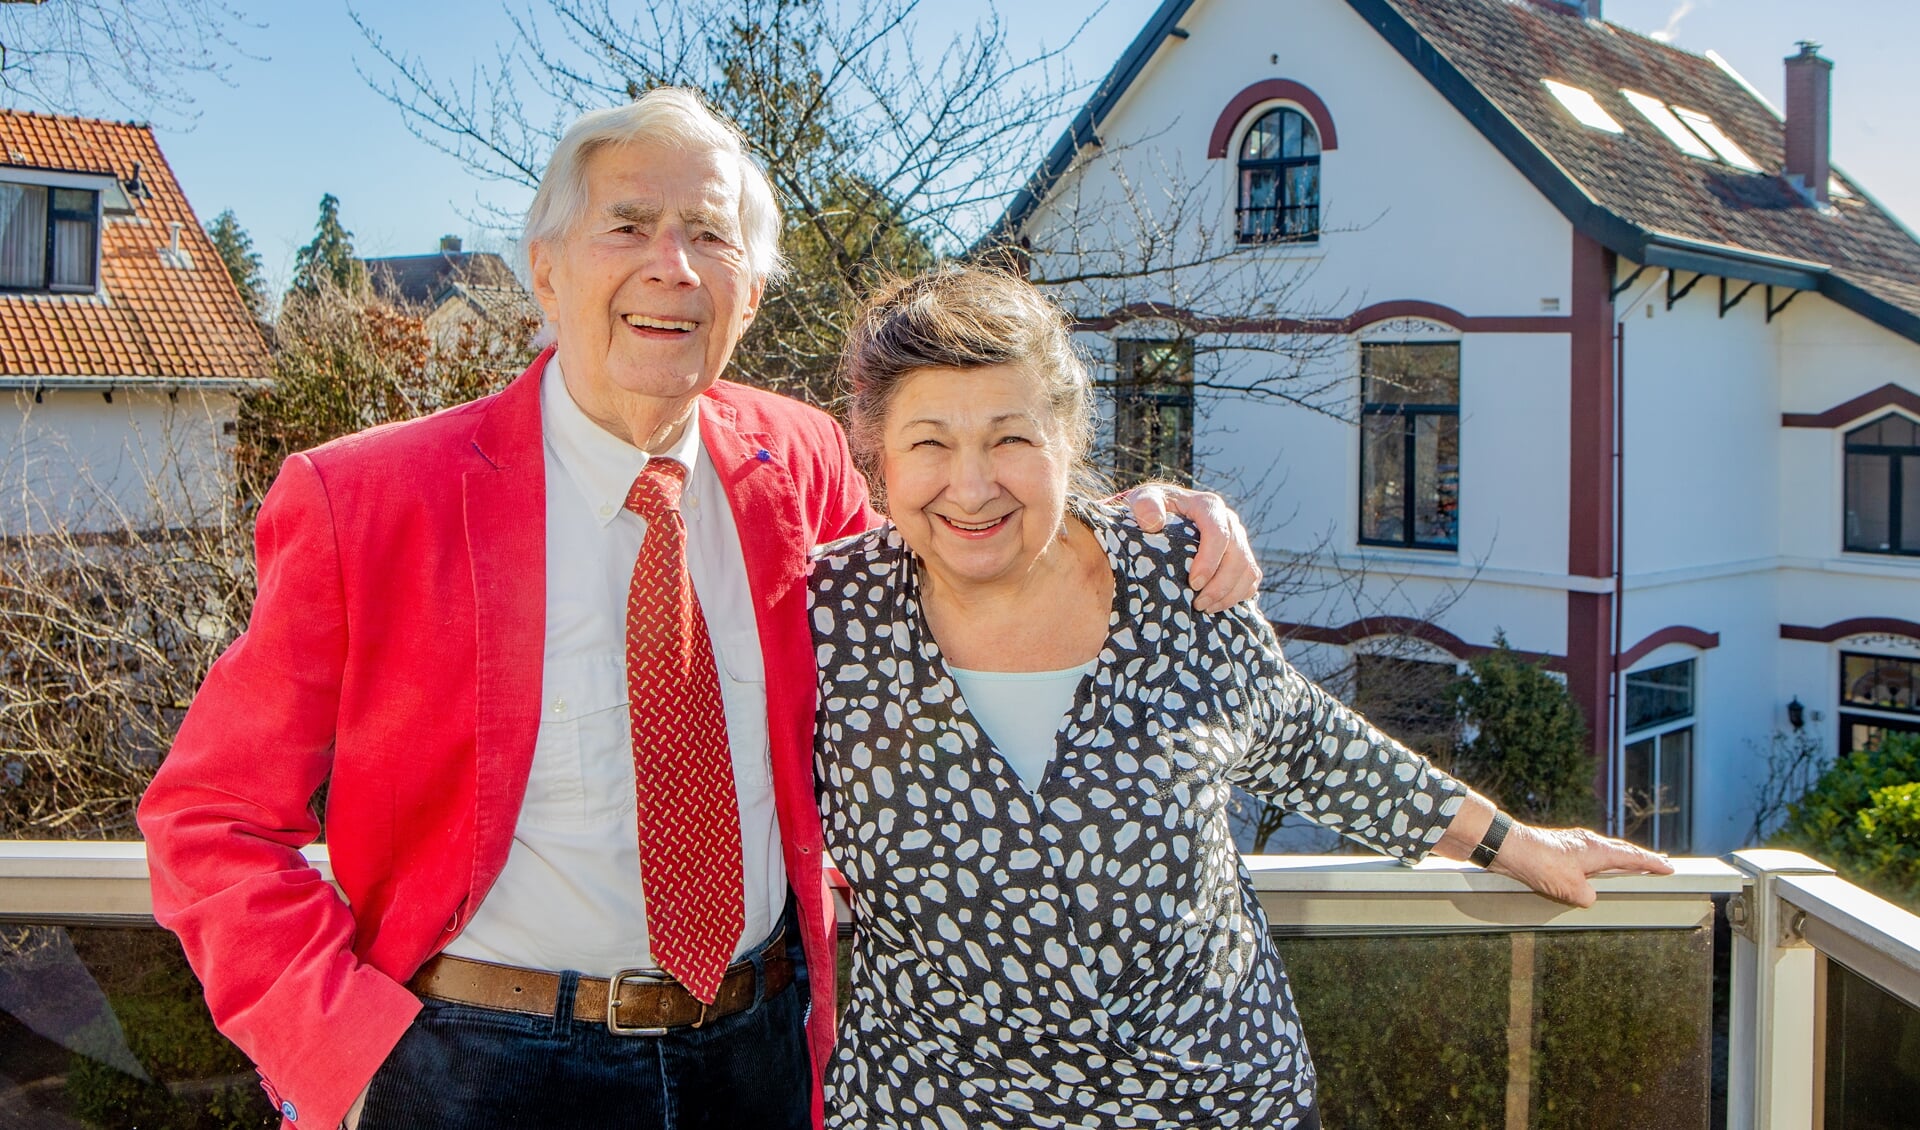 Zondag viert het vrolijke echtpaar hun 60-jarig jubileum!